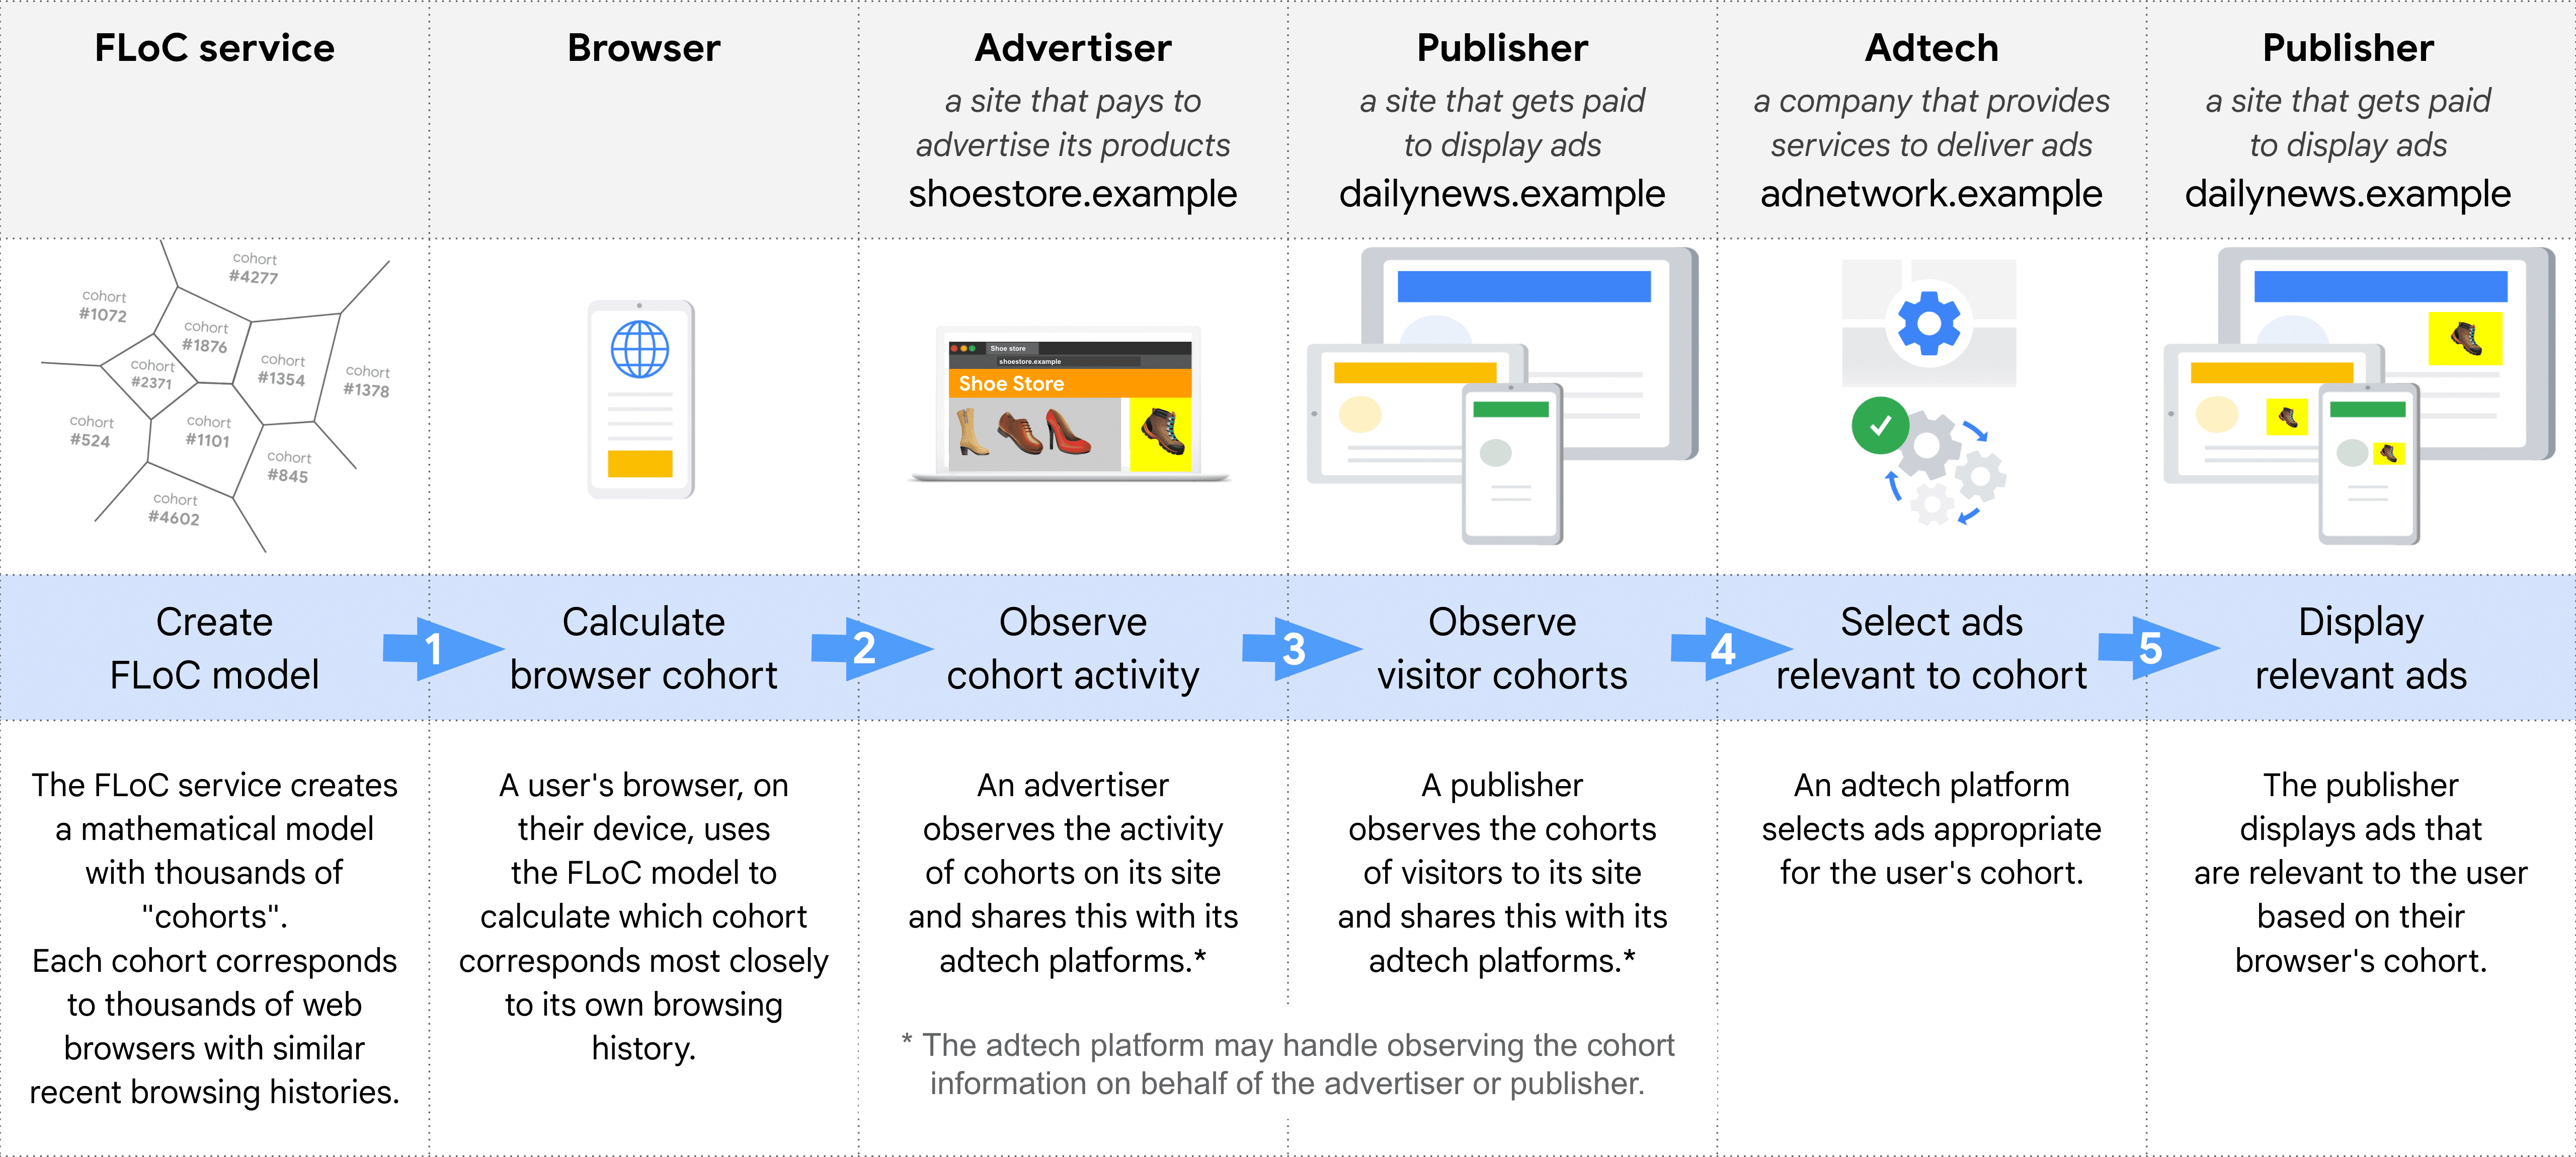 Diagrama que muestra, paso a paso, las diferentes funciones en la selección y publicación de un anuncio con FLoC: servicio FLoC, navegador, anunciantes, editor (para observar las cohortes), adtech, editor (para mostrar anuncios)